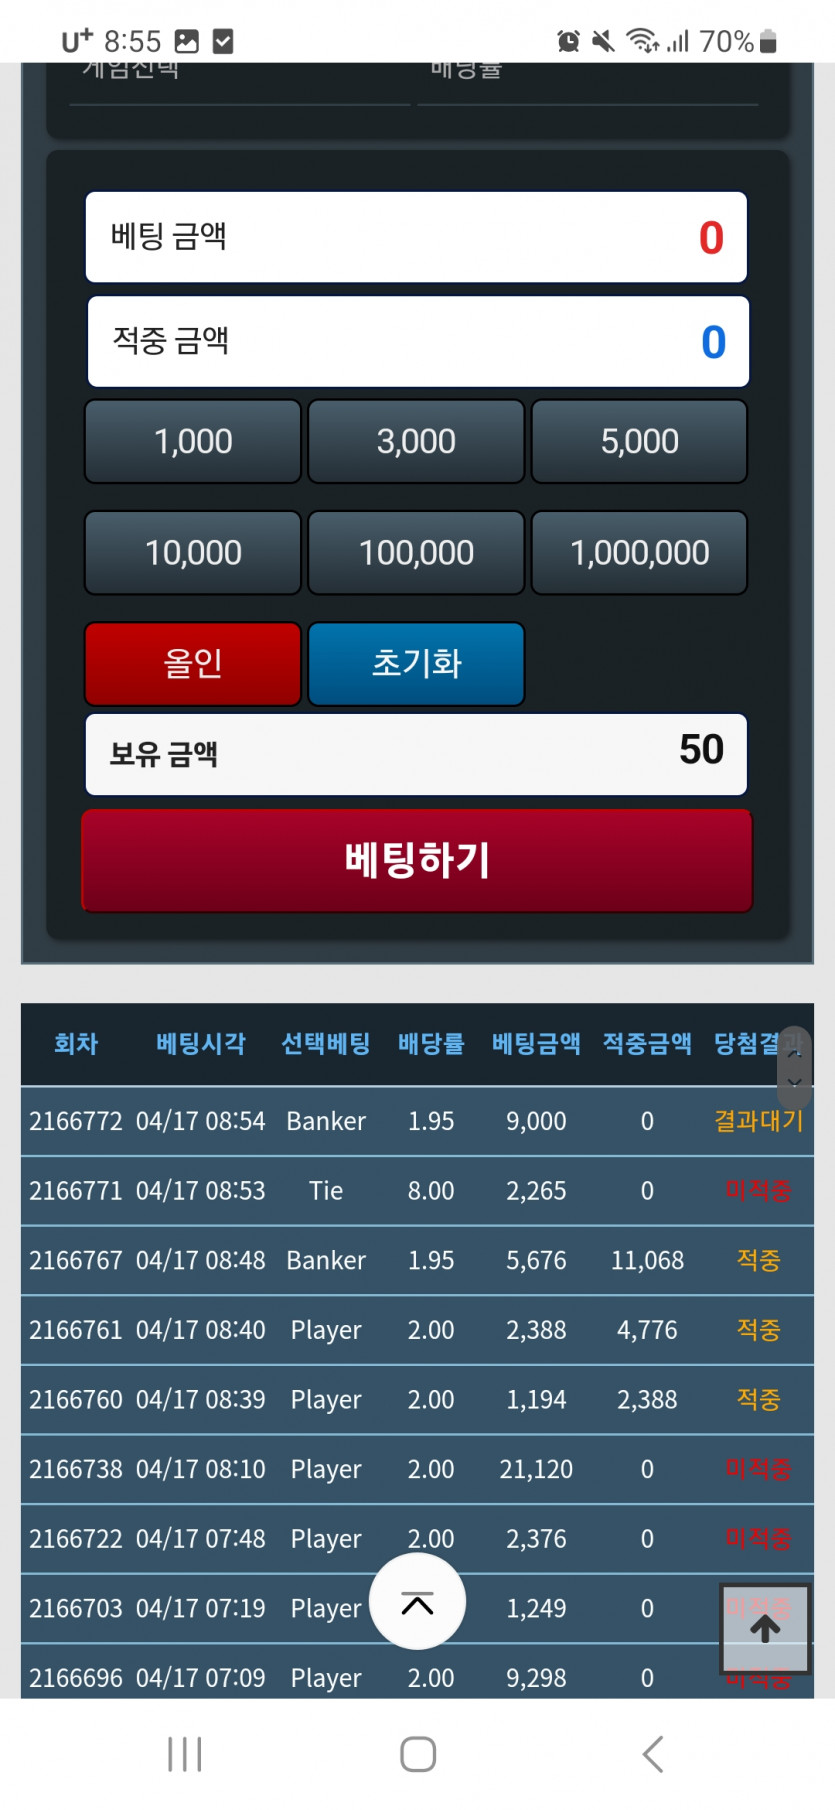 점검전 3만원 !!!(0)